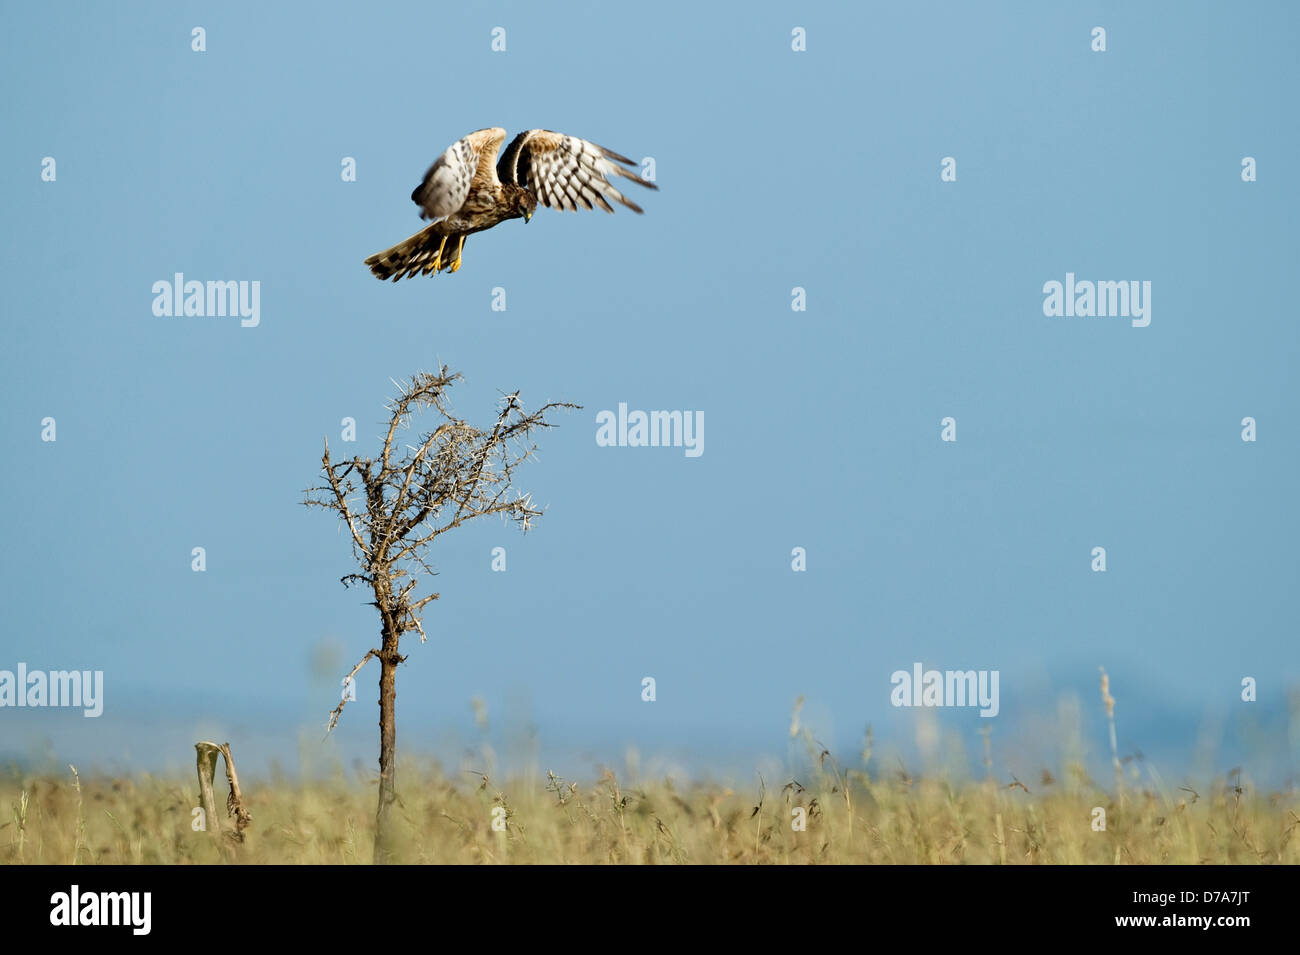 Femme Busard pâle Circus macrourus voler au-dessus de l'herbe haute vallée de Seronera Parc National de Serengeti en Tanzanie Banque D'Images